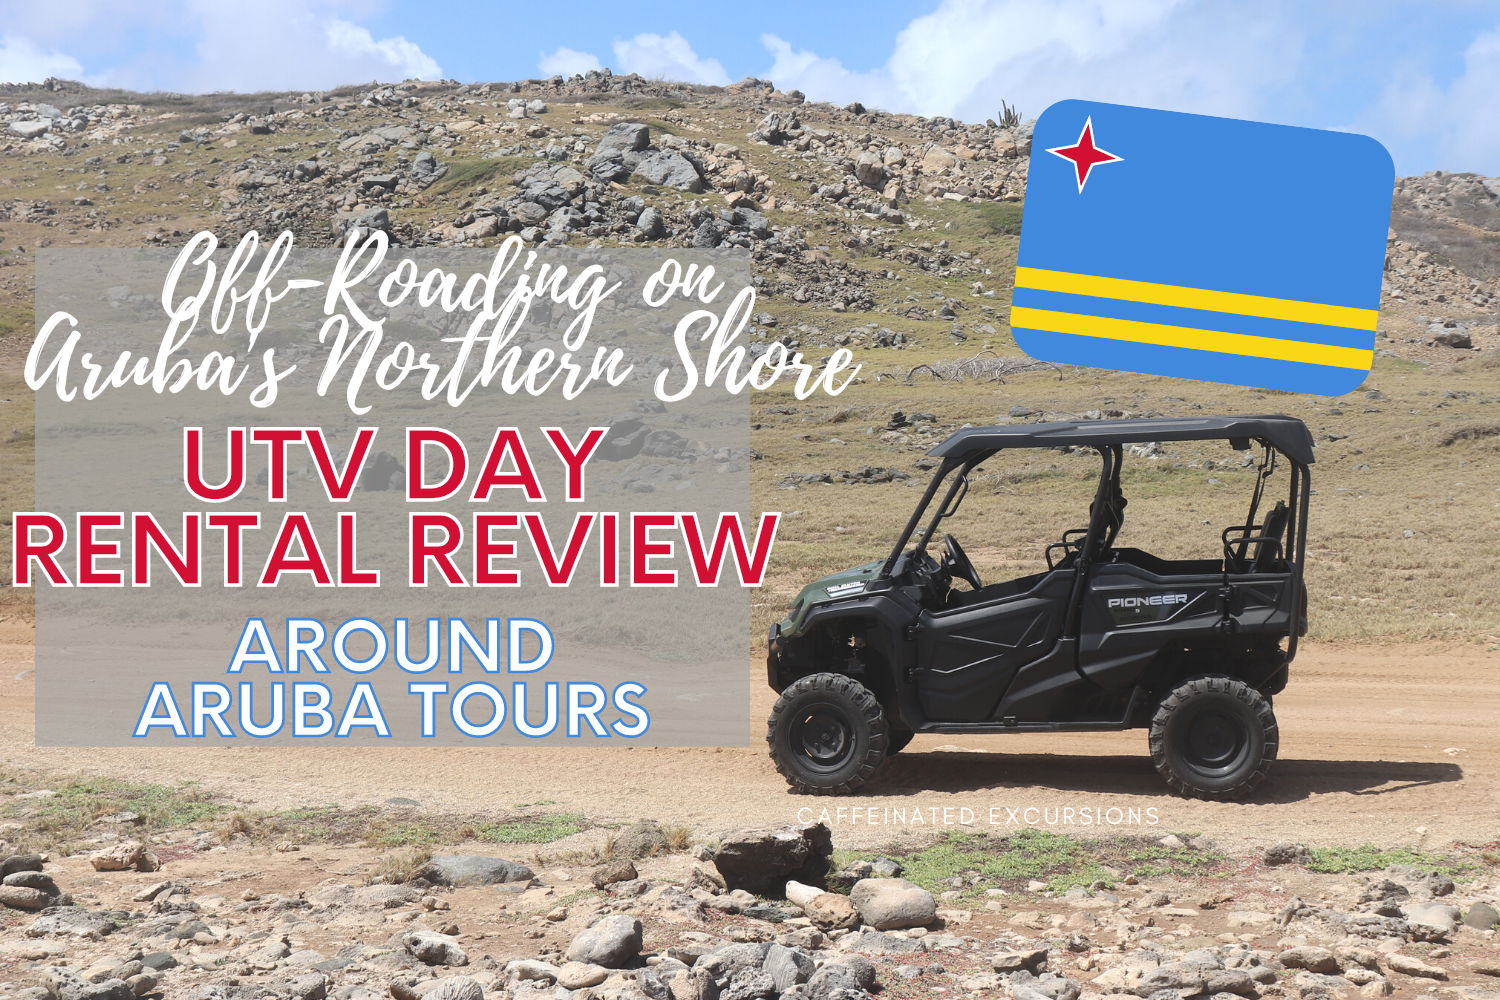 around aruba utv tour review